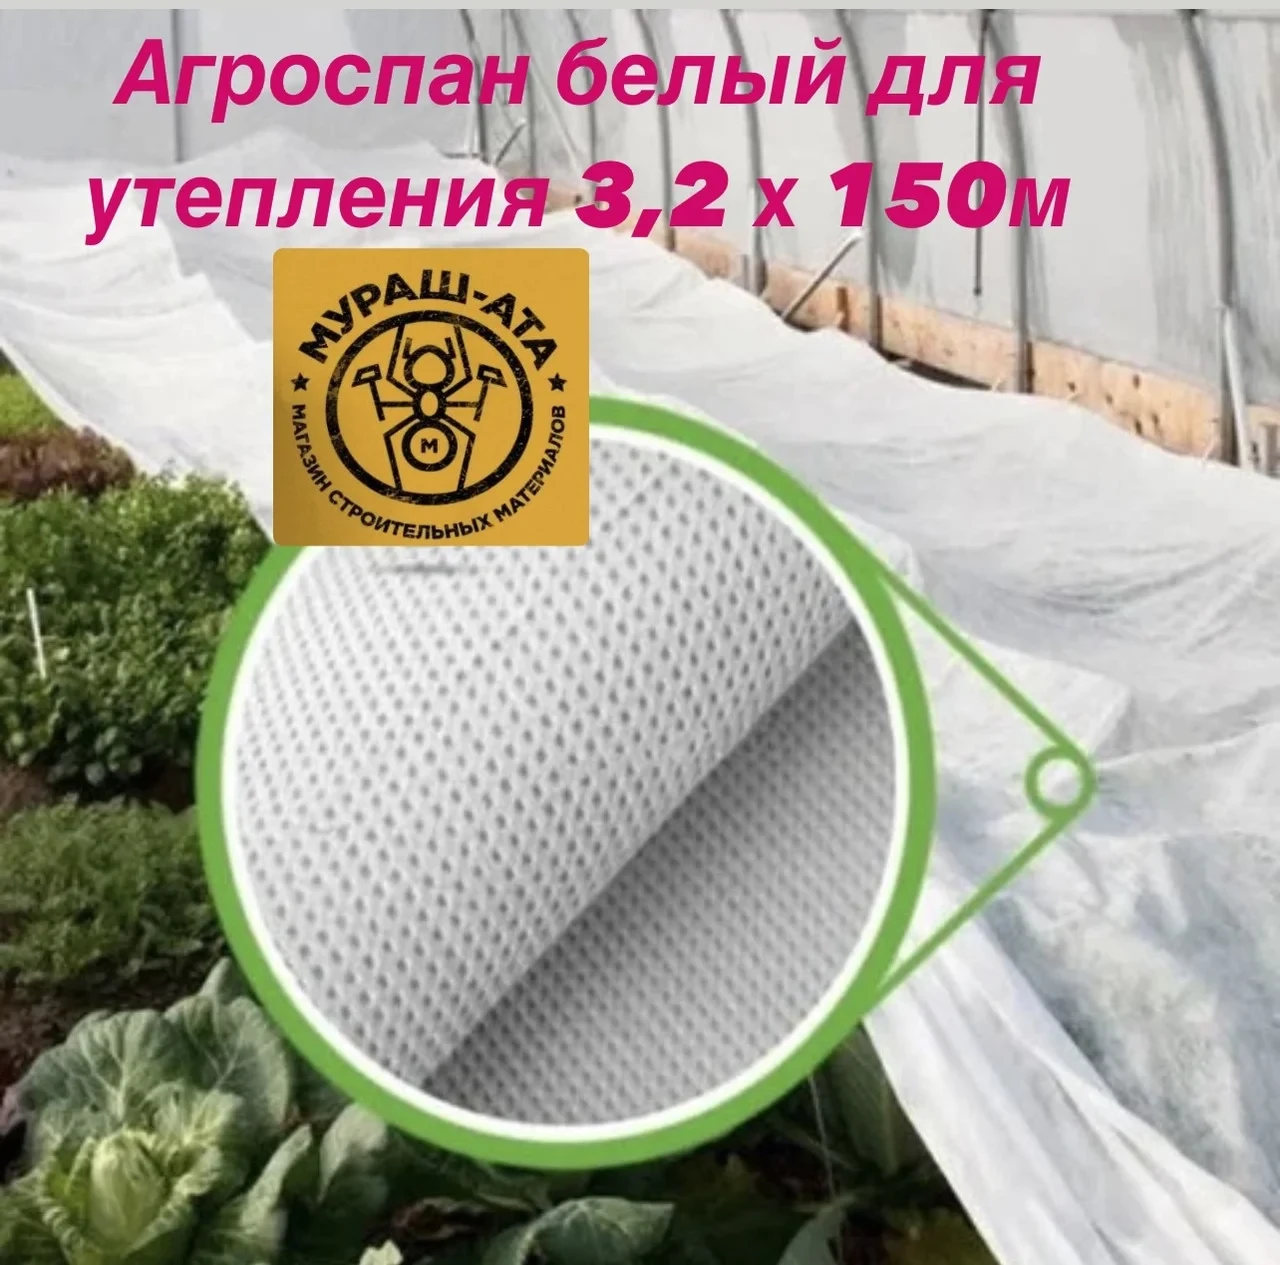 Агроспан белый для утепления 3,2 х 150м (разукомлект)